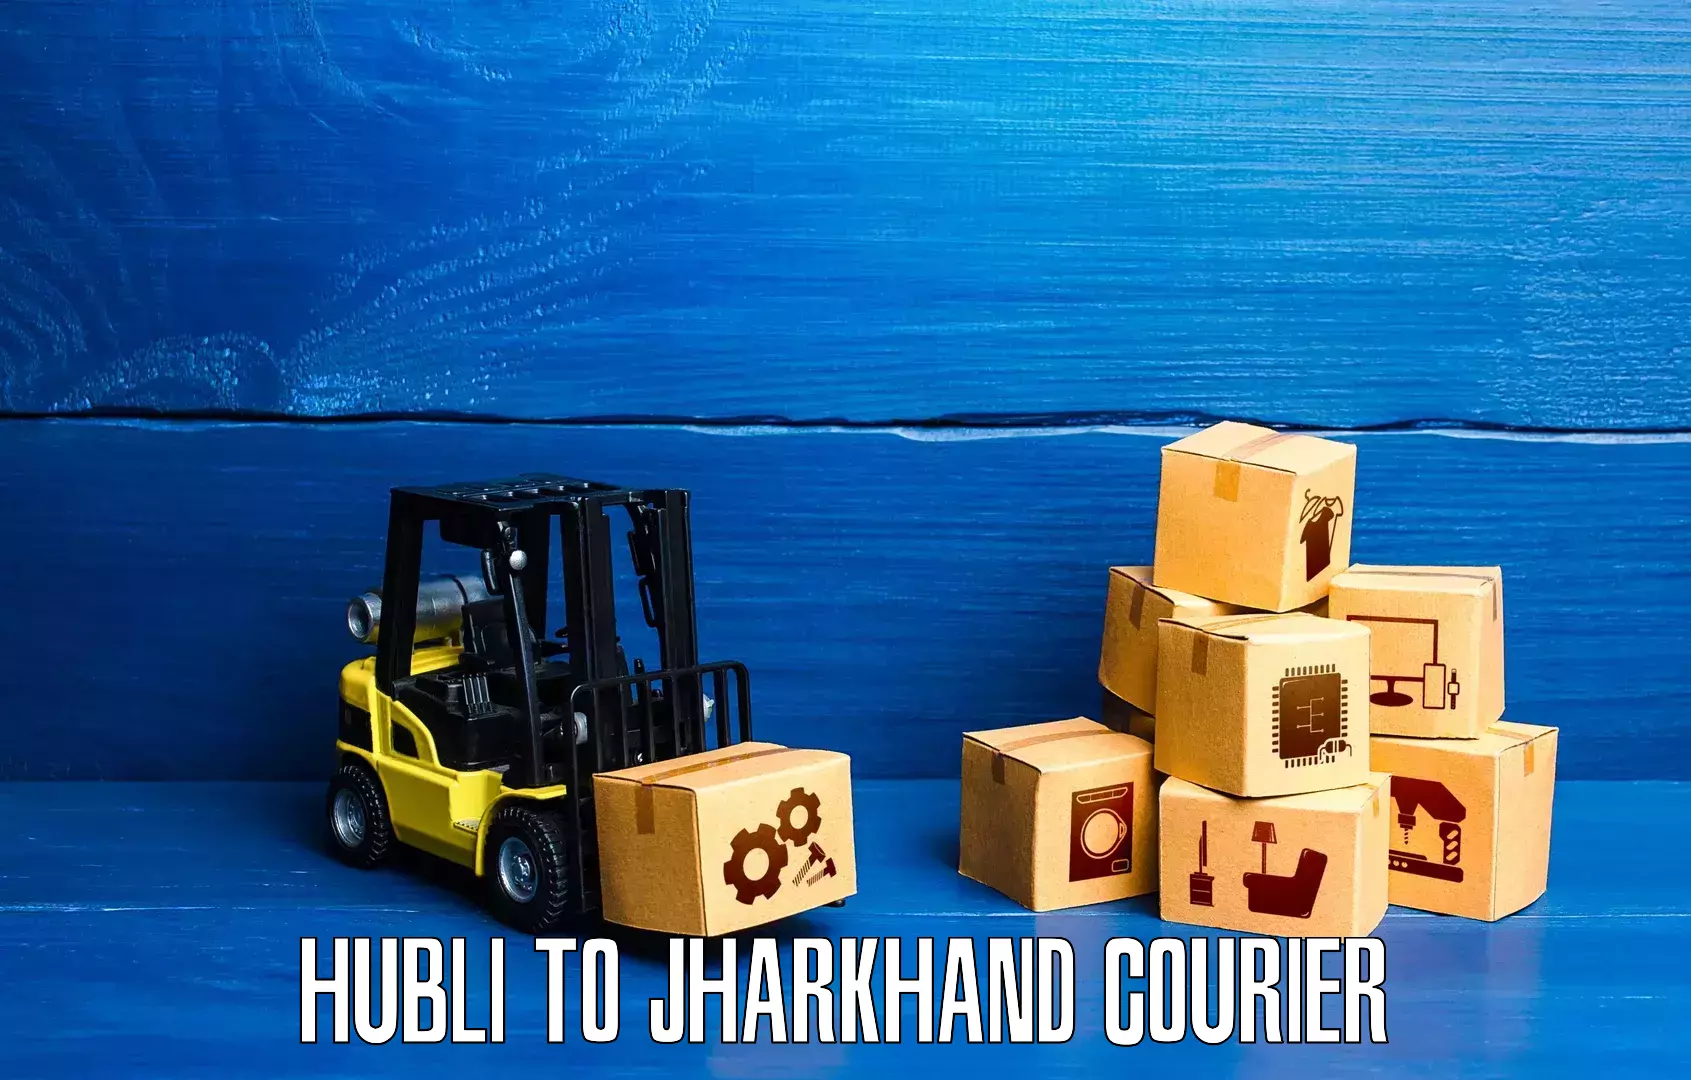 Efficient parcel service Hubli to Domchanch